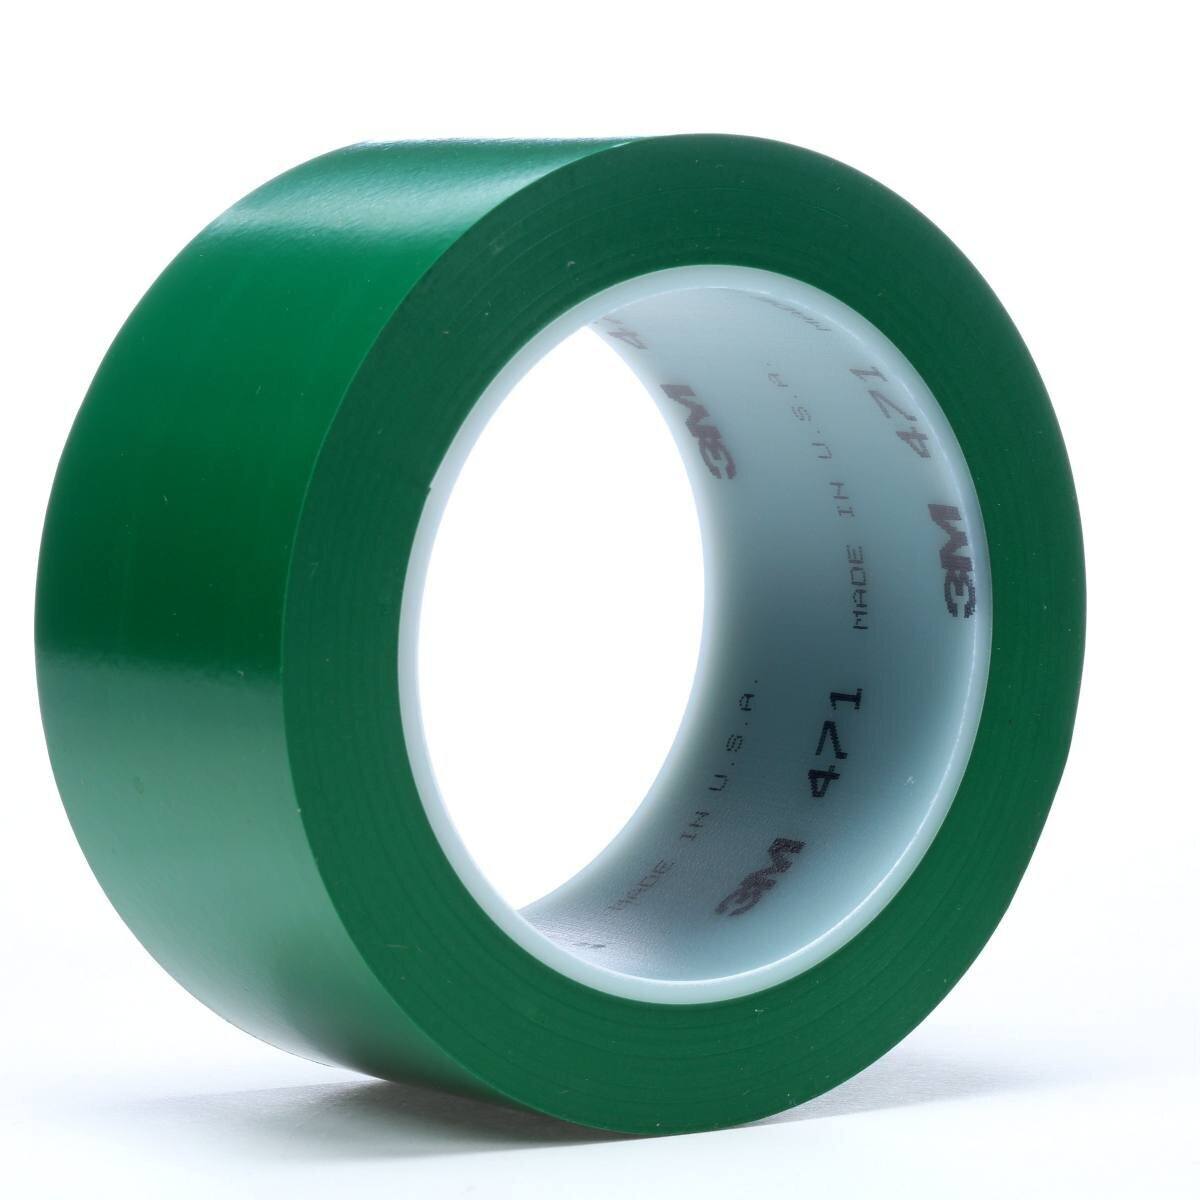 3M pehmeä PVC-teippi 471 F, vihreä, 50 mm x 33 m, 0,13 mm, yksittäin ja käytännöllisesti pakattu.